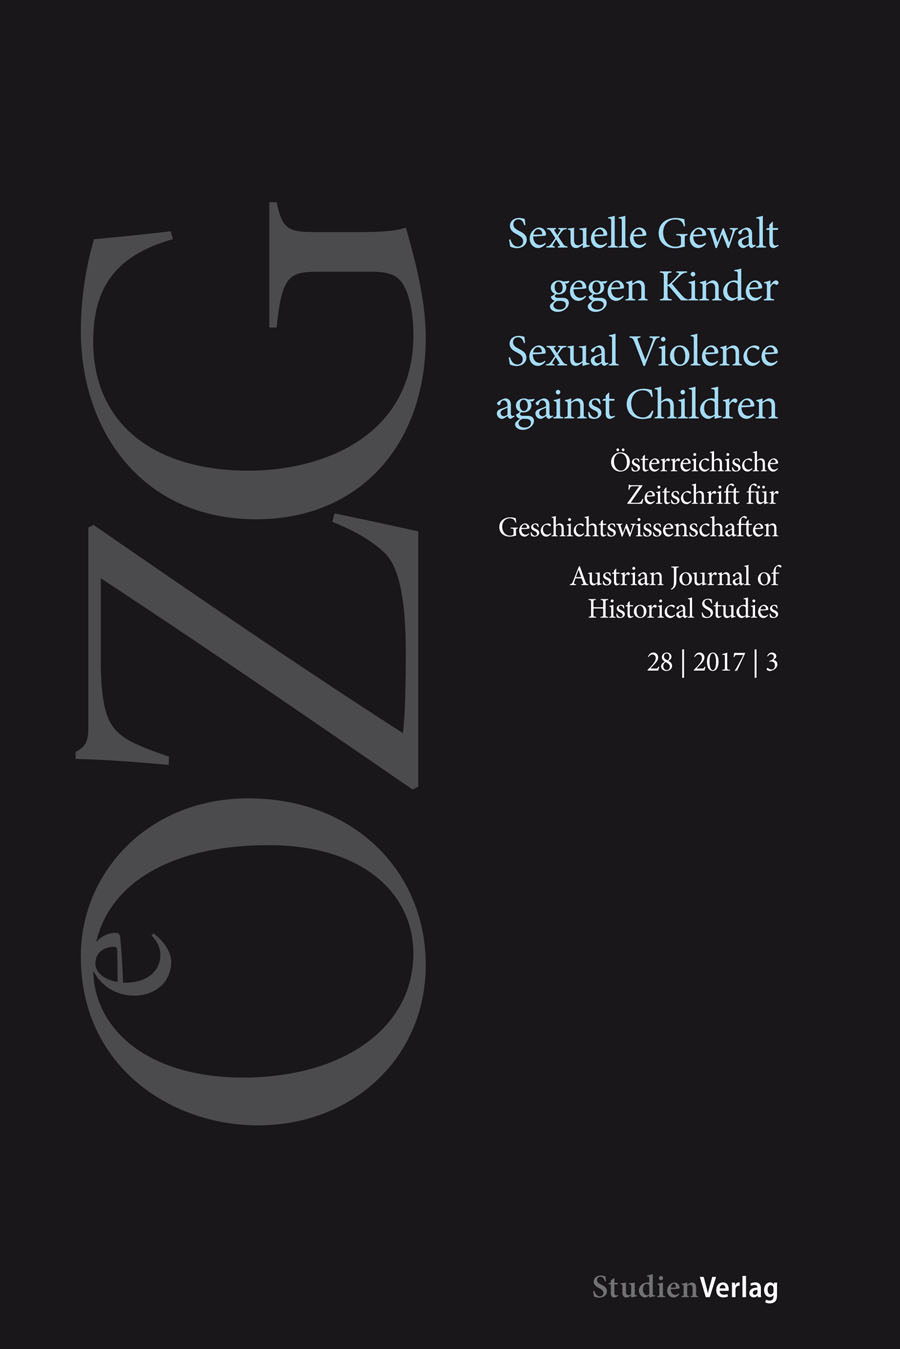 OeZG_Sexuelle Gewalt gegen Kinder